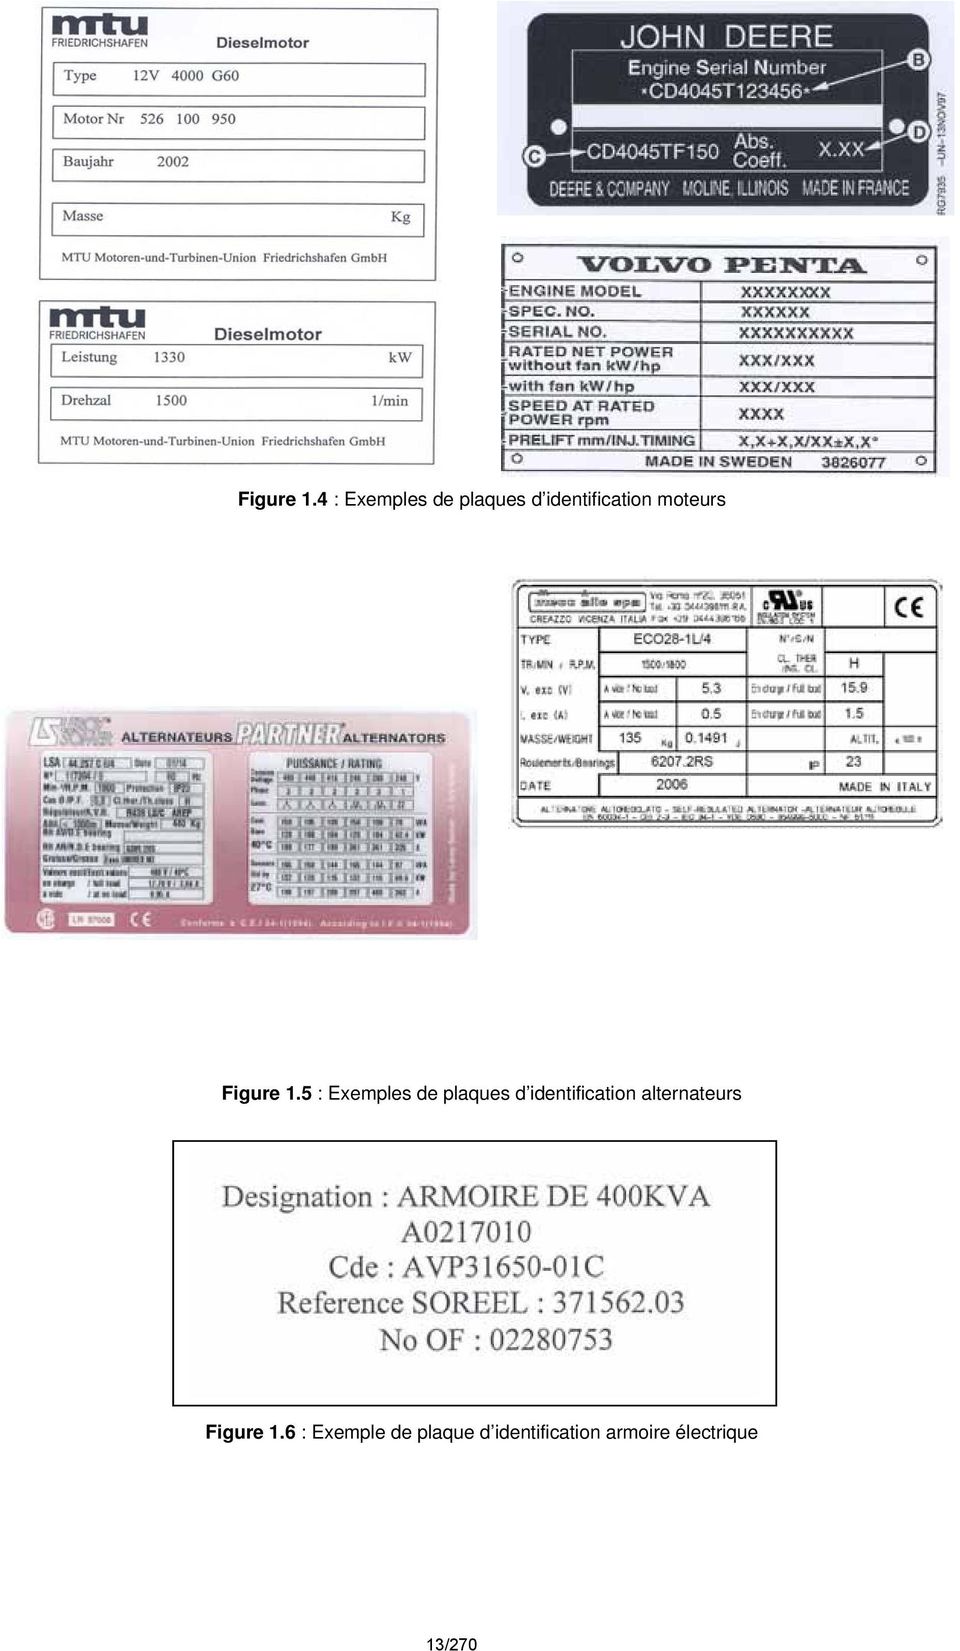 Exemples de plaques d identification alternateurs